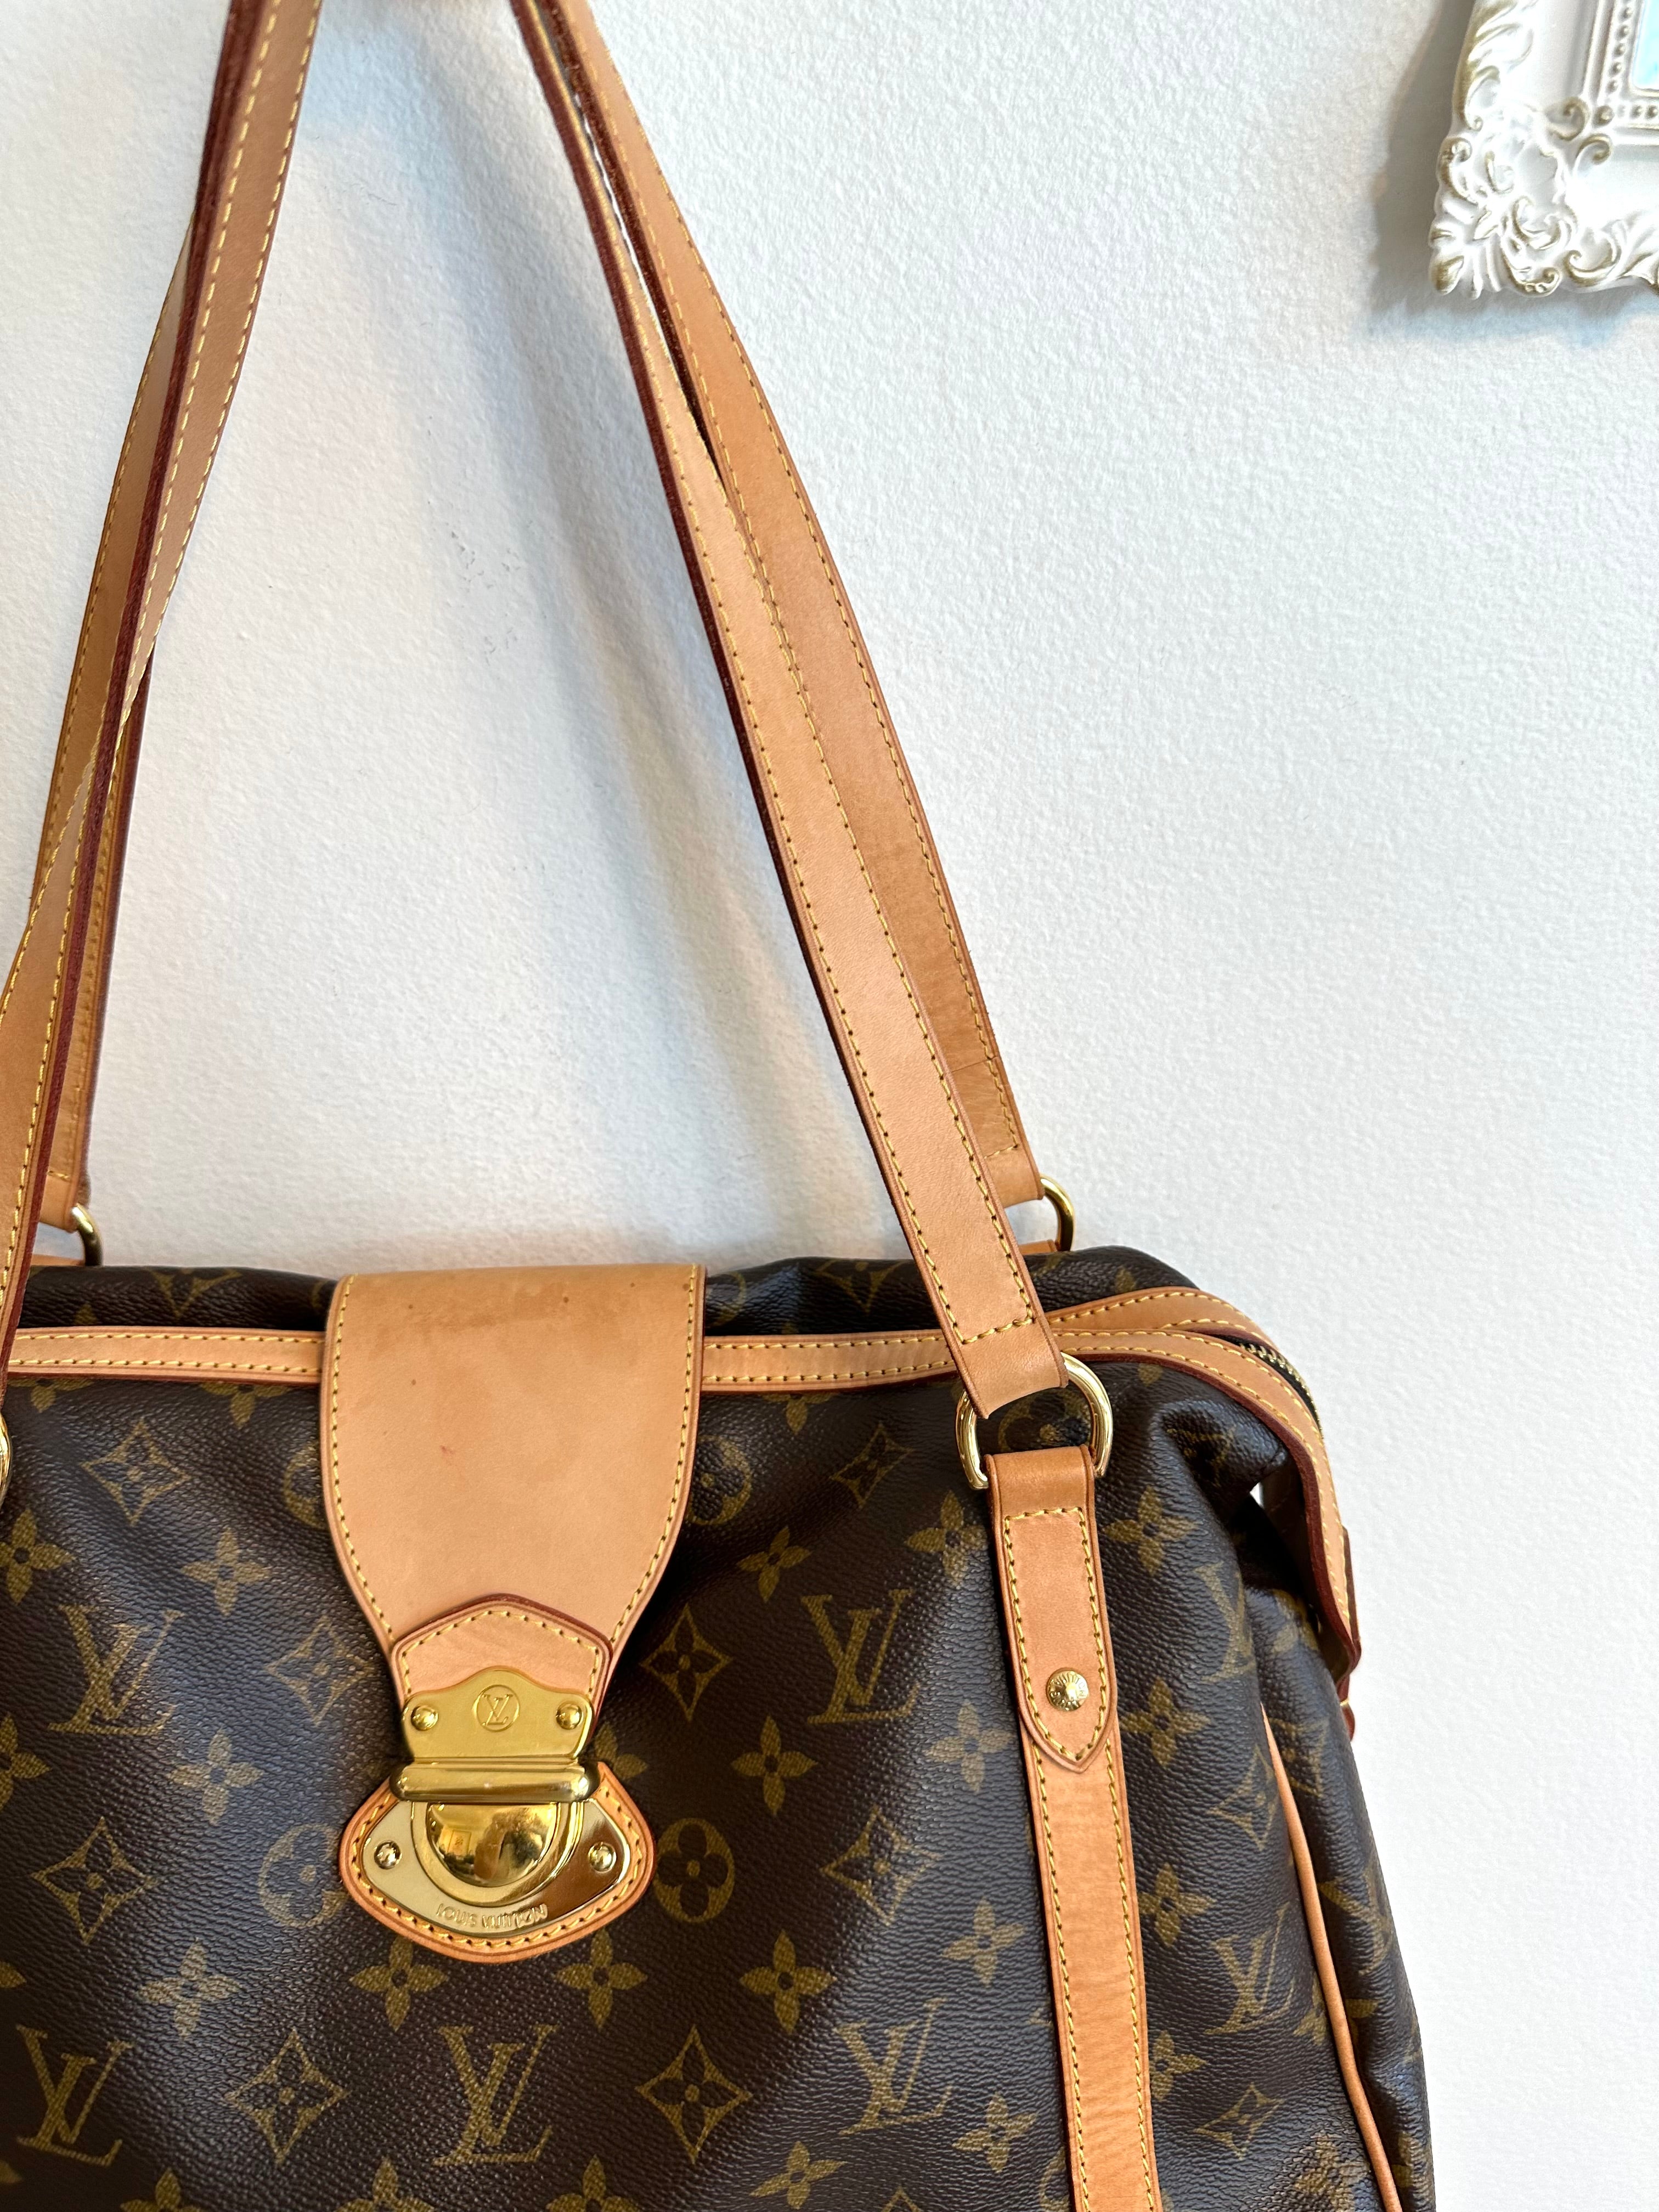 Louis Vuitton Stresa Pm Brown Canvas Handbag (Pre-Owned)